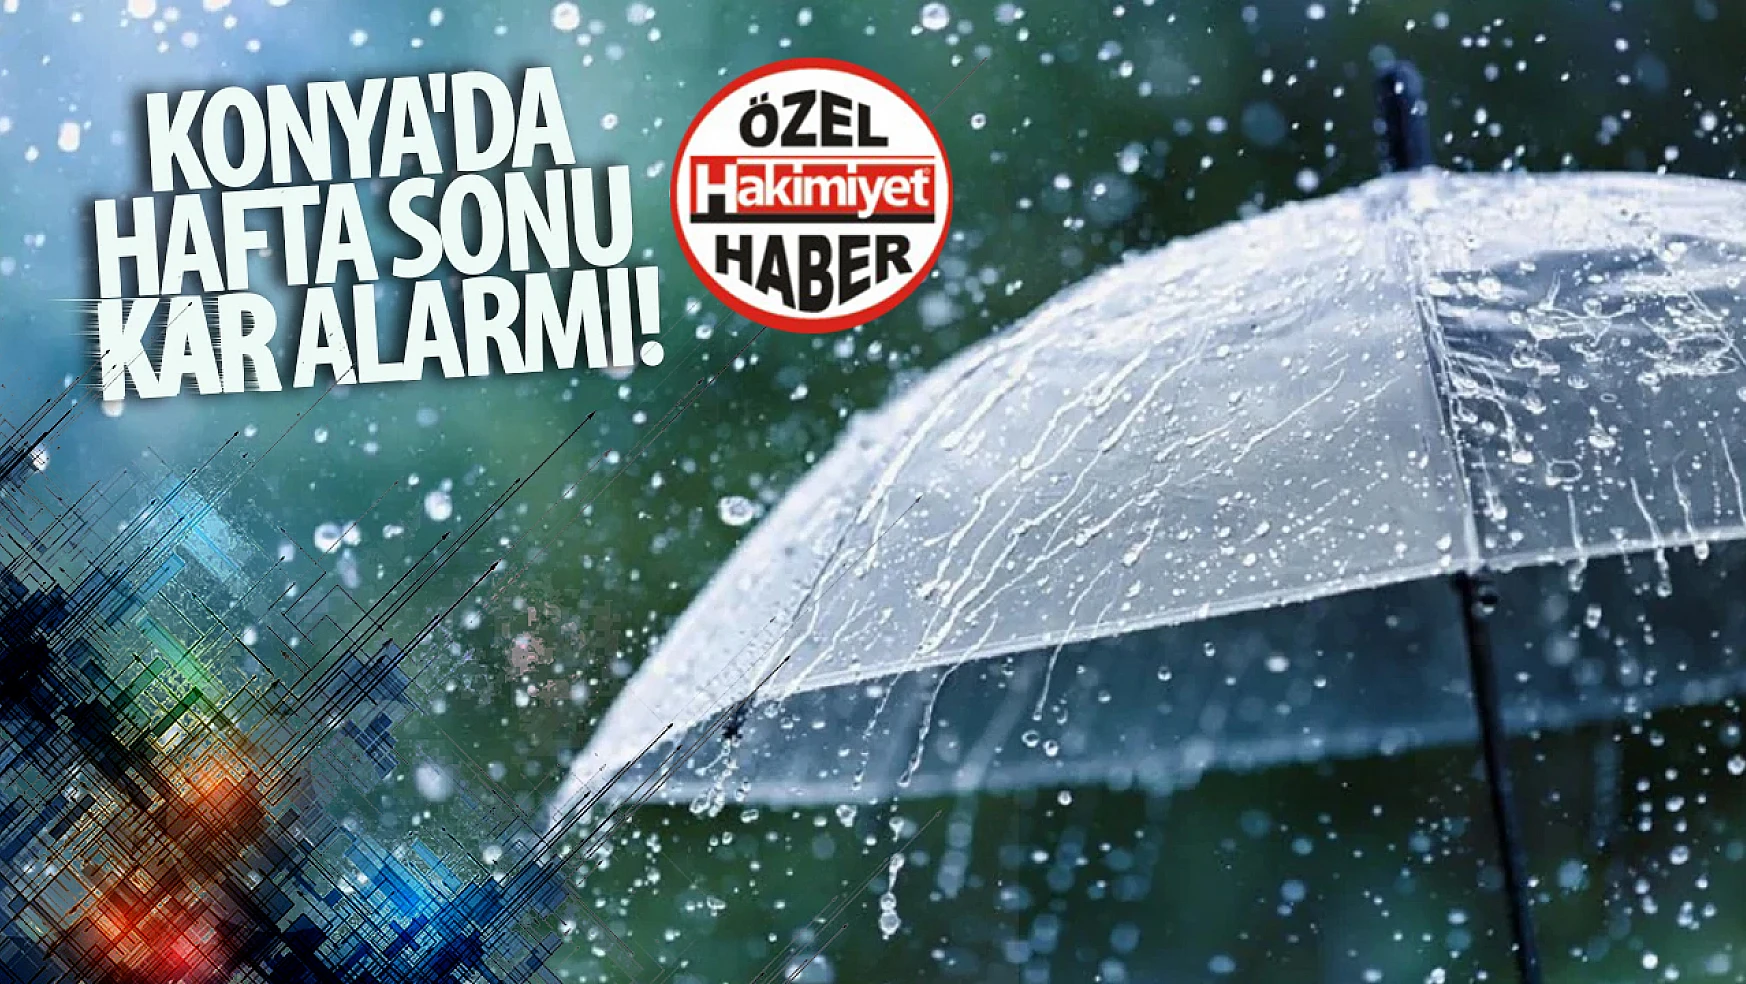 Konya'da Hafta Sonu Kar Alarmı! Sürücülere Dikkat Çağrısı